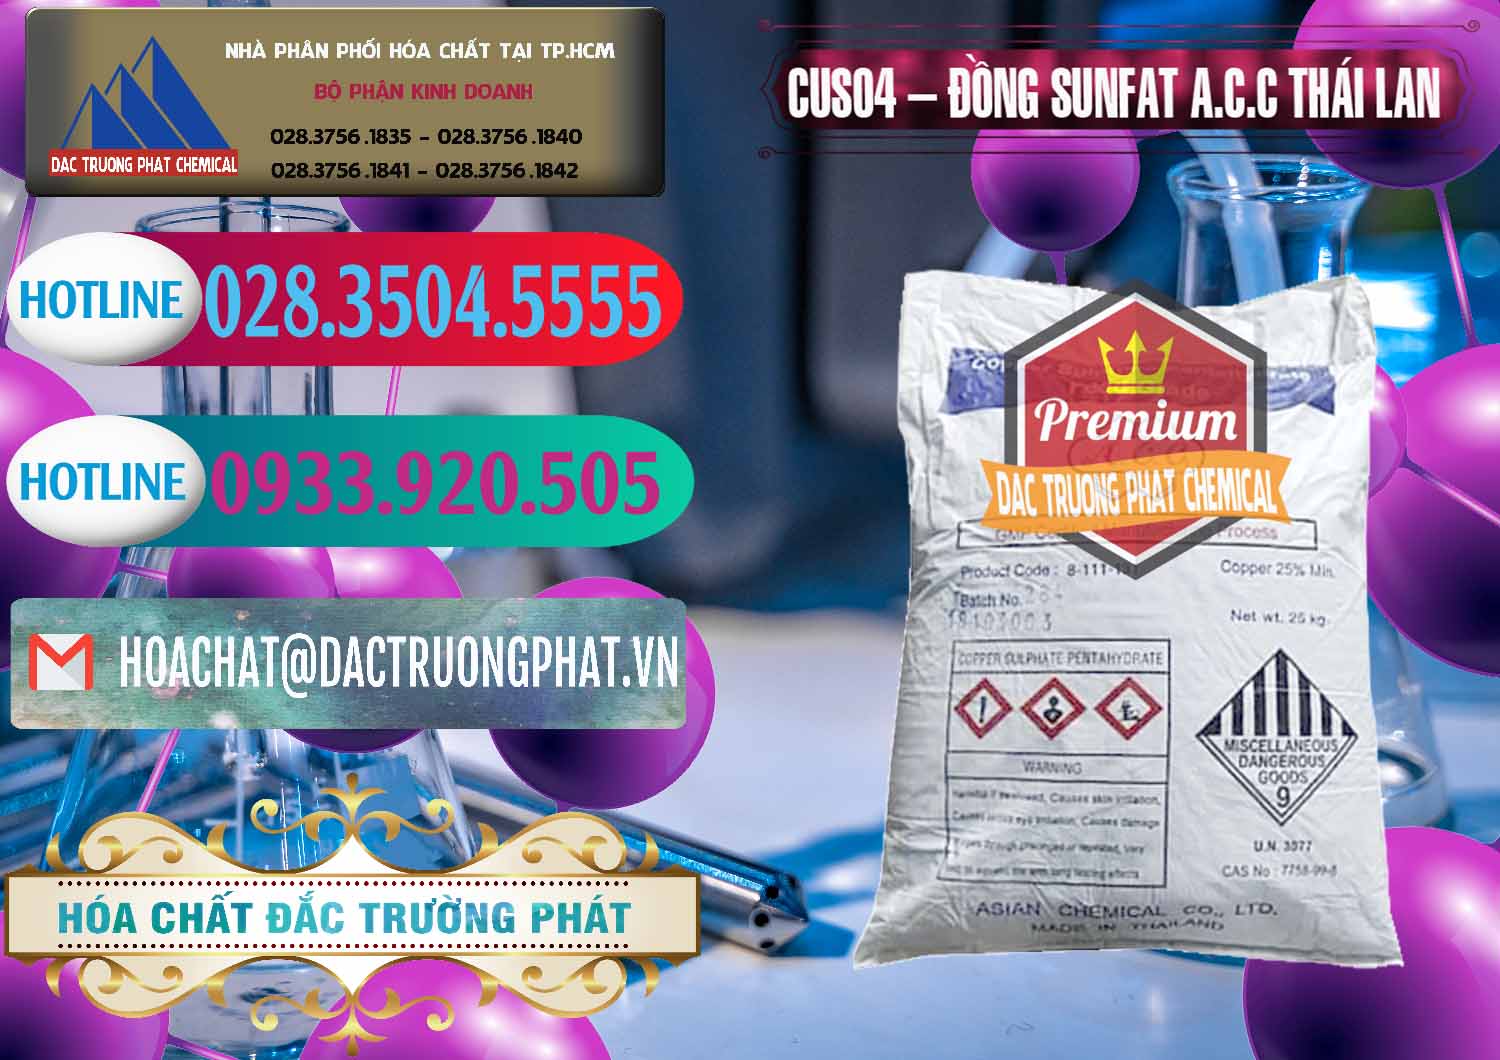 Cty chuyên bán ( cung cấp ) CuSO4 – Đồng Sunfat A.C.C Thái Lan - 0249 - Nơi chuyên nhập khẩu & phân phối hóa chất tại TP.HCM - truongphat.vn